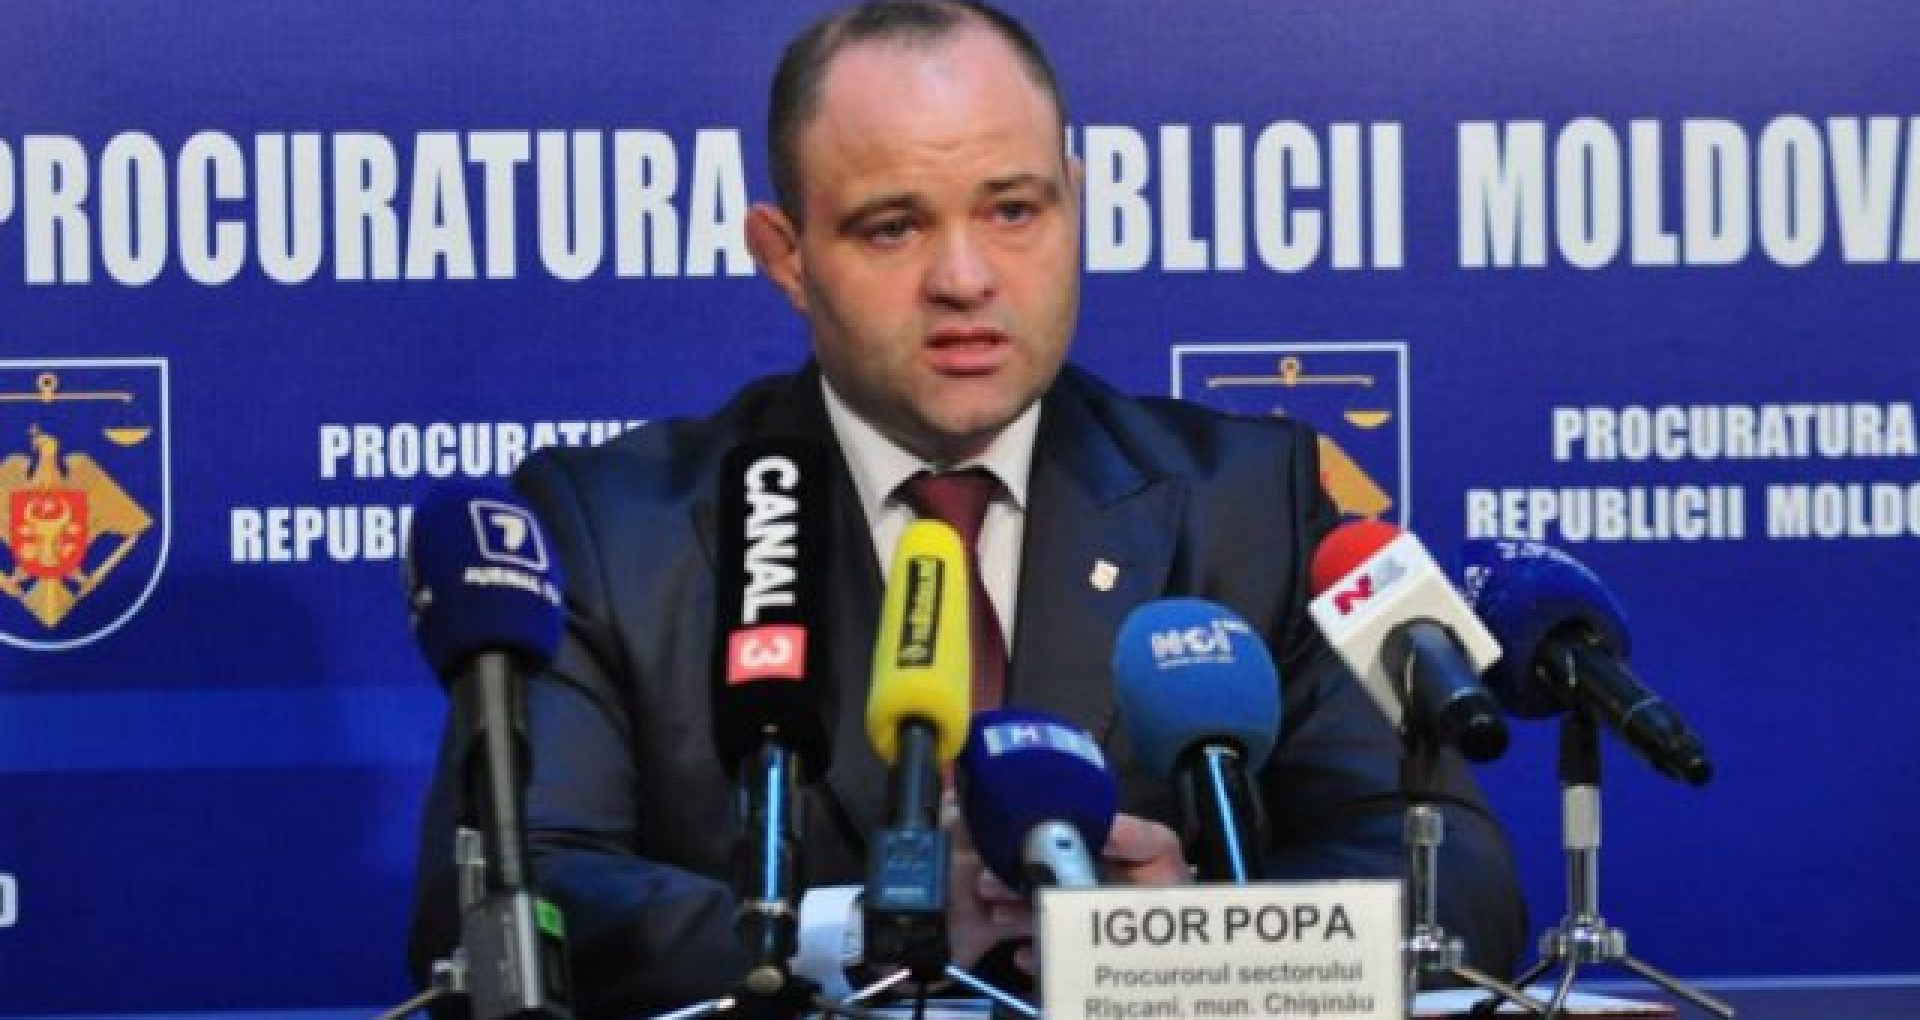 ULTIMA ORĂ/ Igor Popa, şeful oficiului Ciocana al Procuraturii Chişinău, reținut pentru 72 de ore, în urma perchezițiilor efectuate la domiciliul acestuia